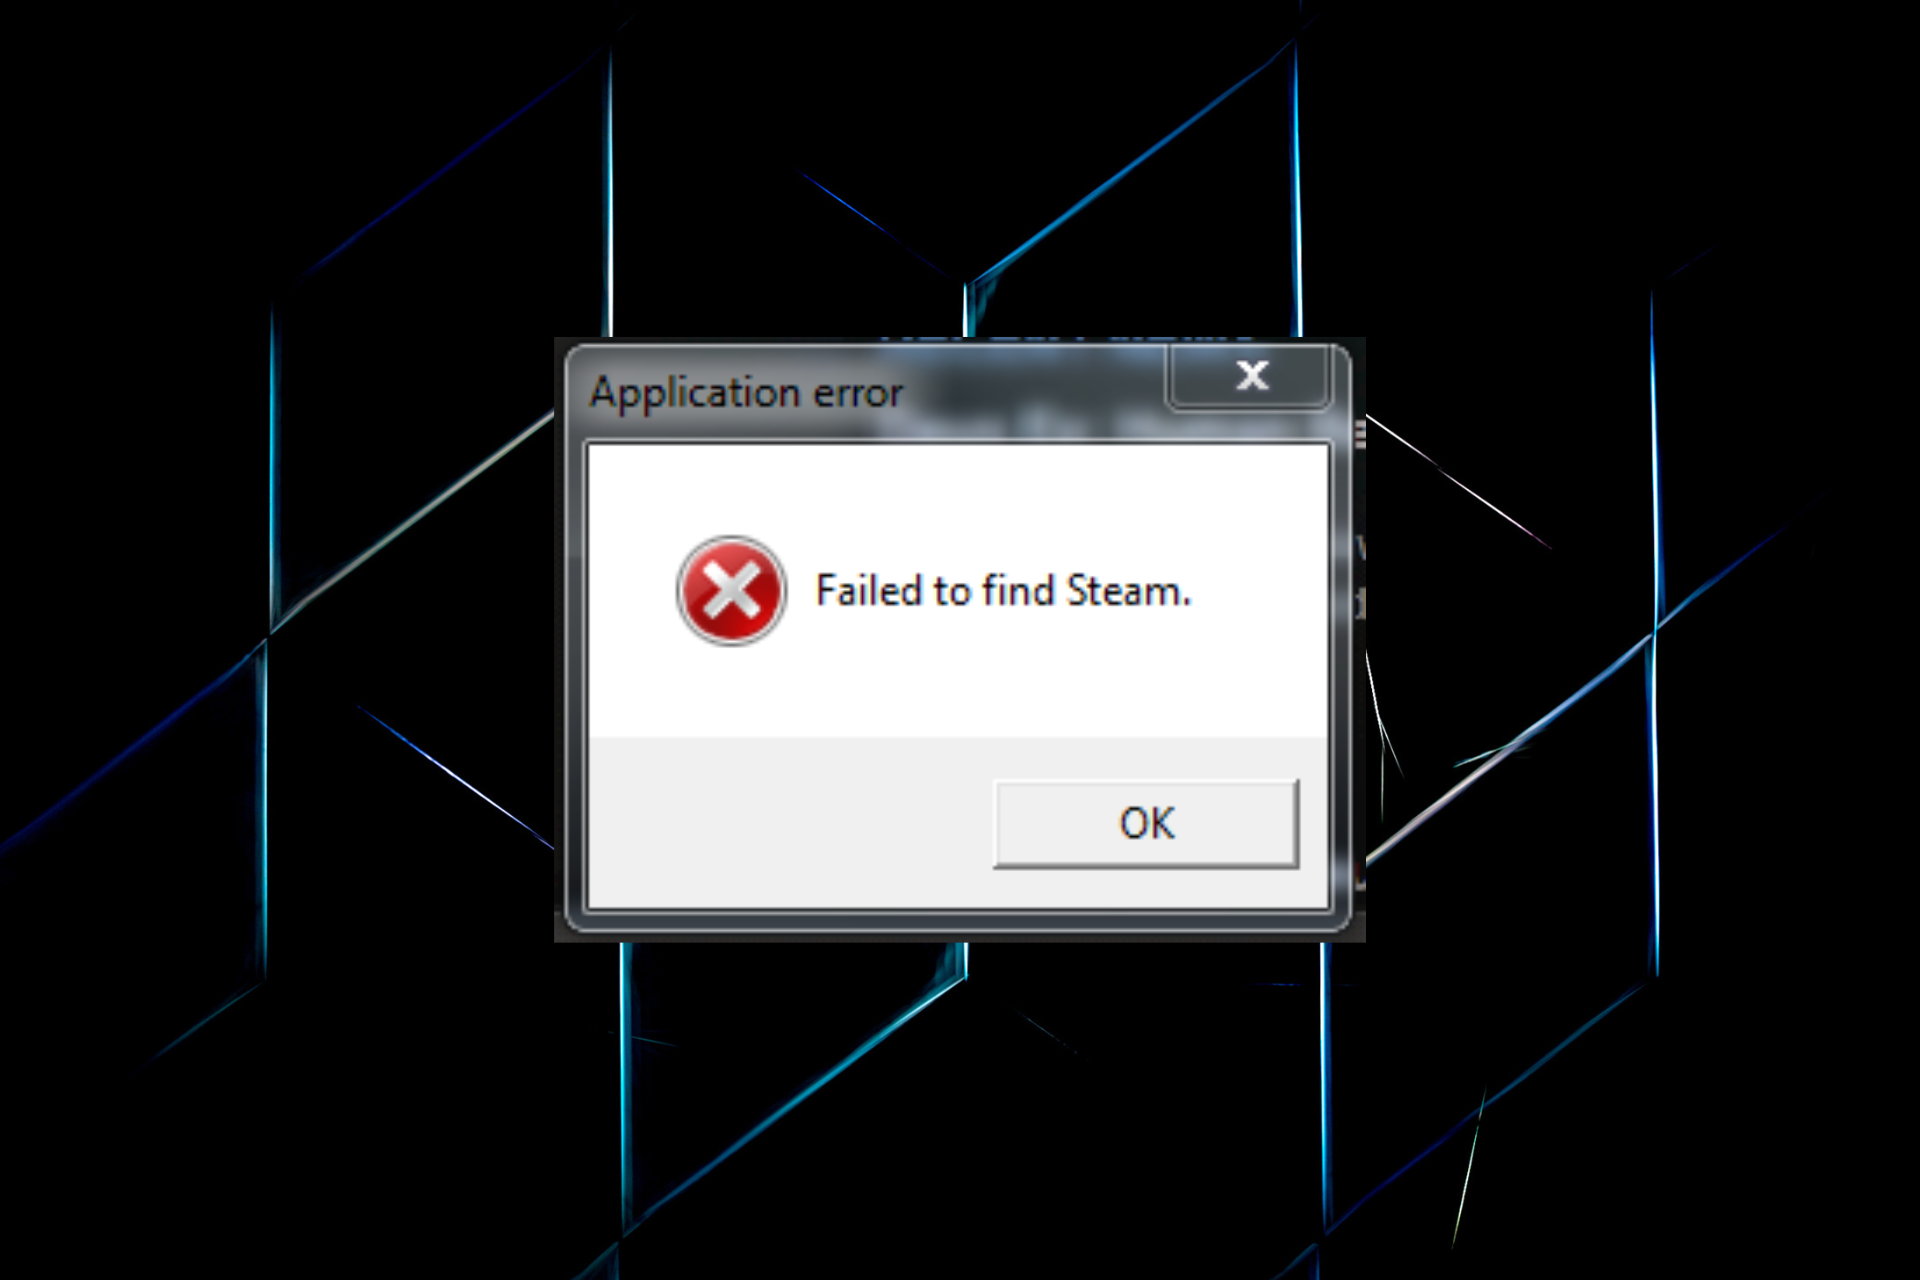 Fix failed to find steam error